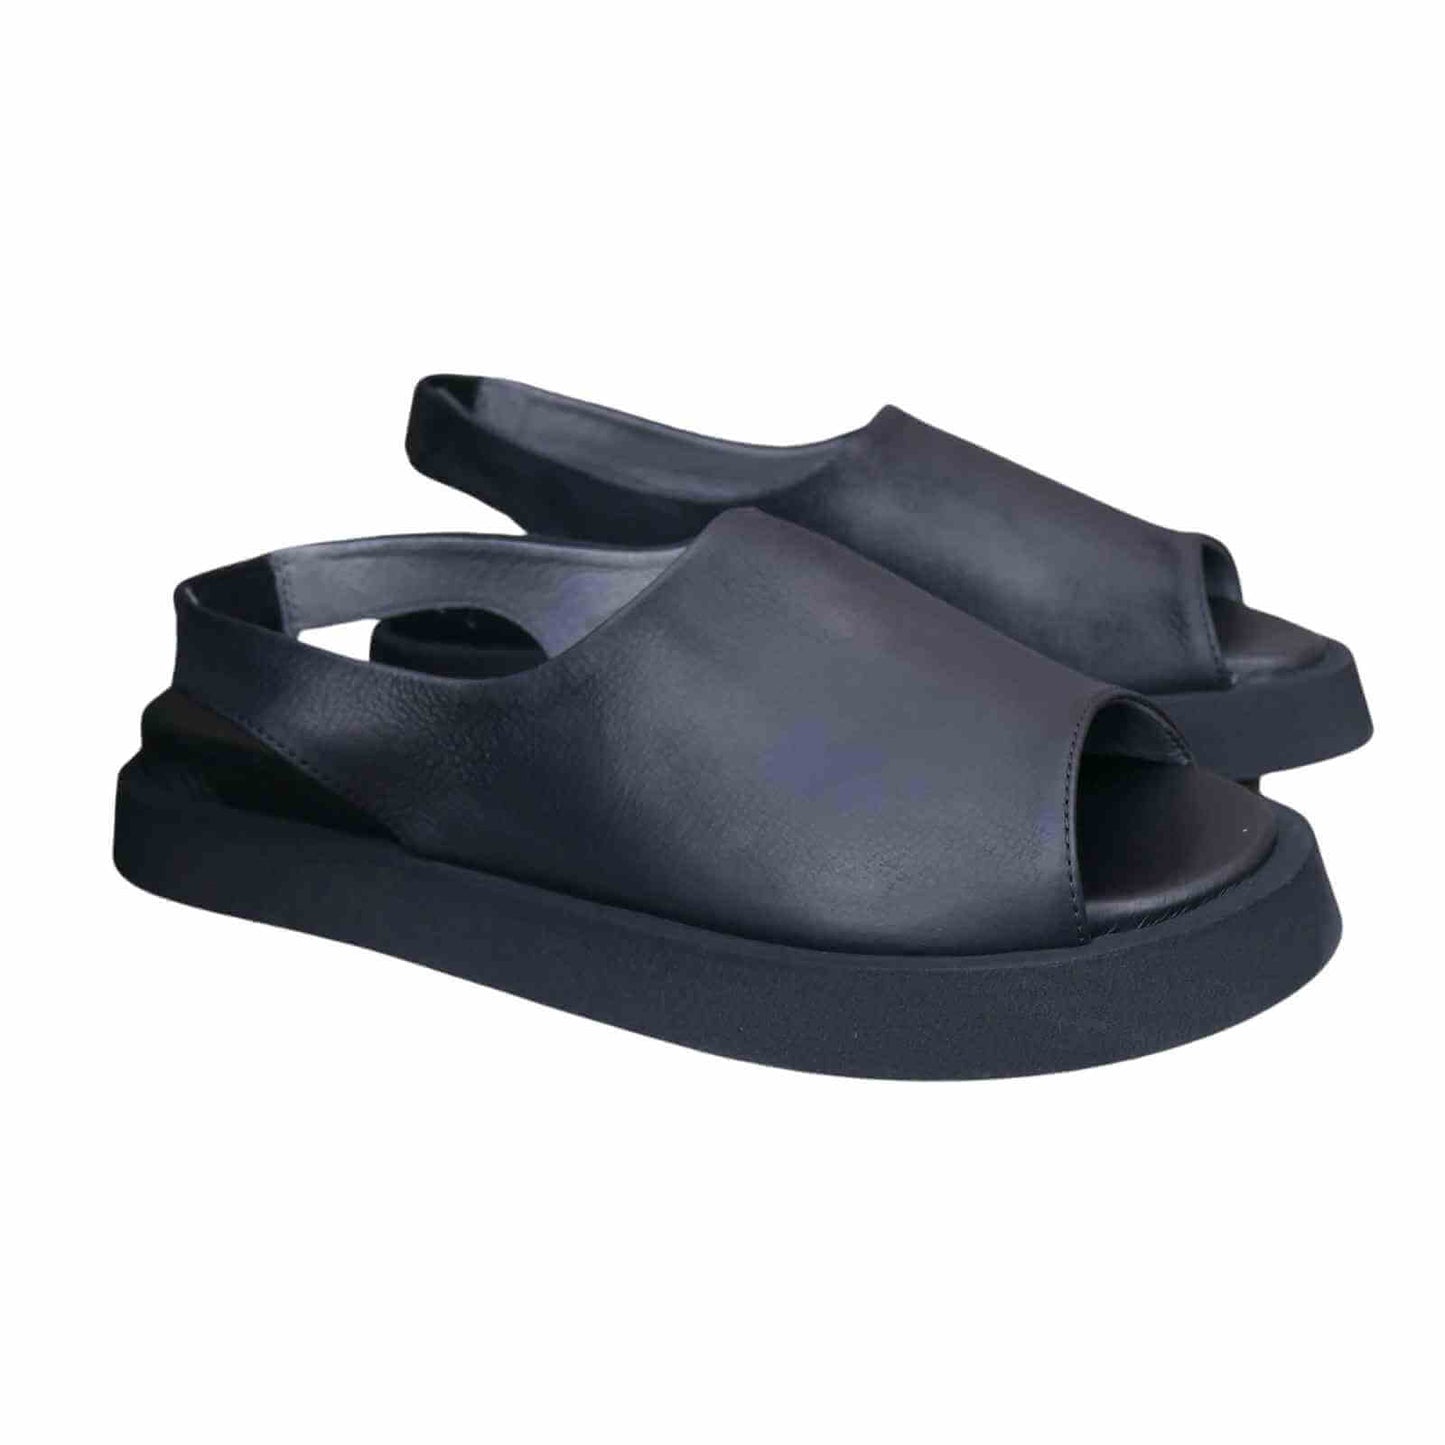 sorte skind sandaler med åben tå og elastisk rem i hælen.